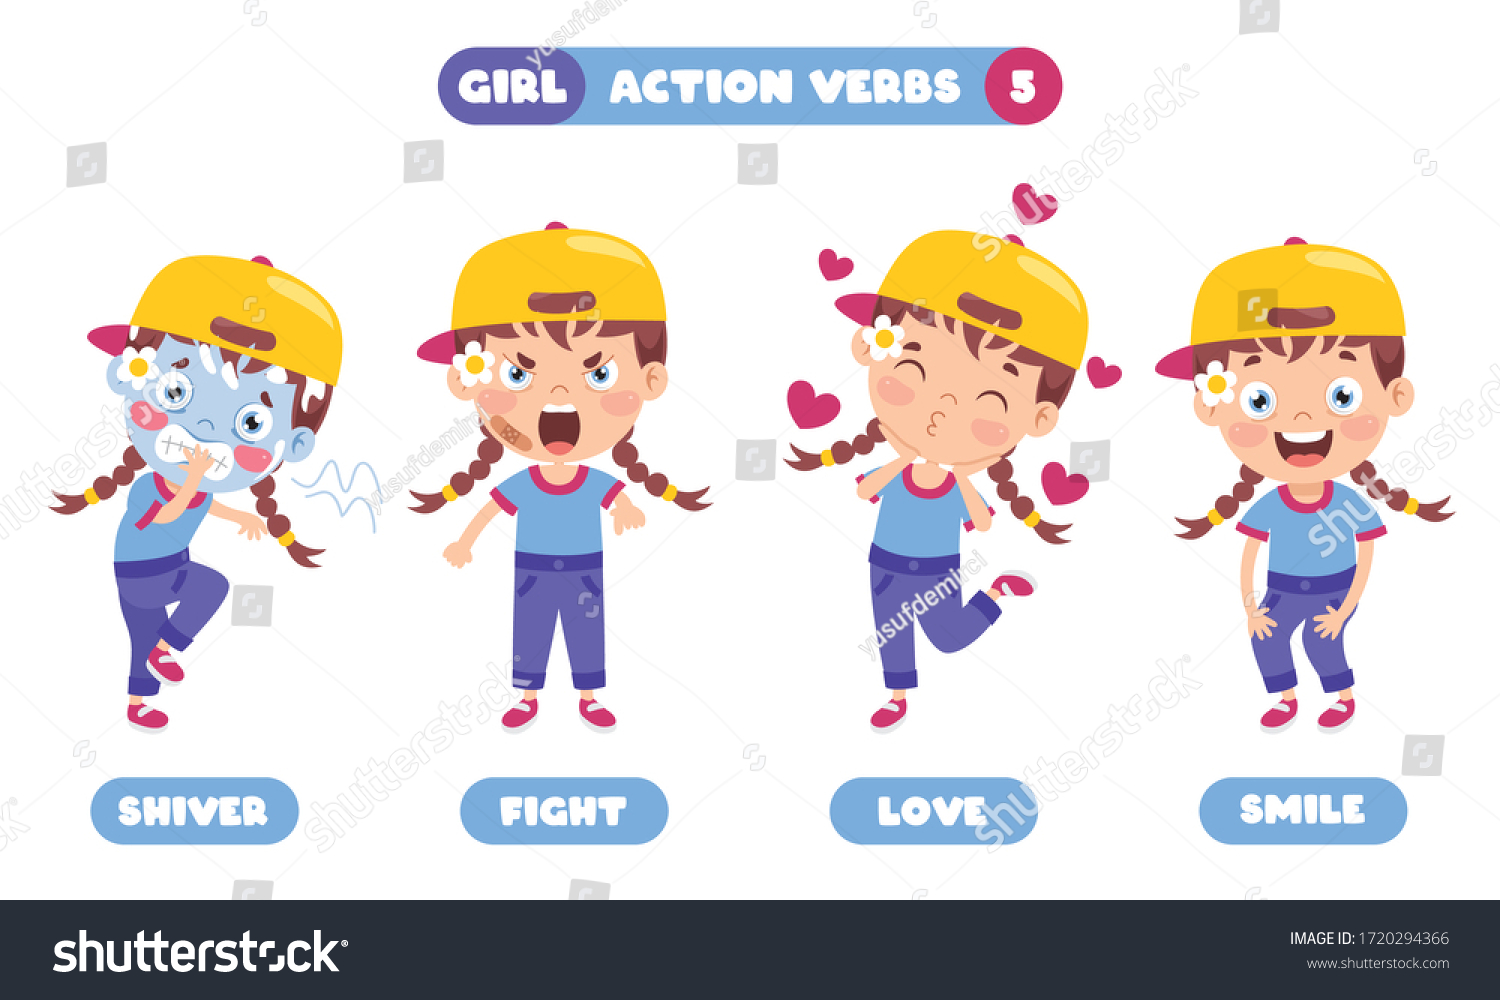 action-words-cartoon-images-stock-photos-vectors-shutterstock